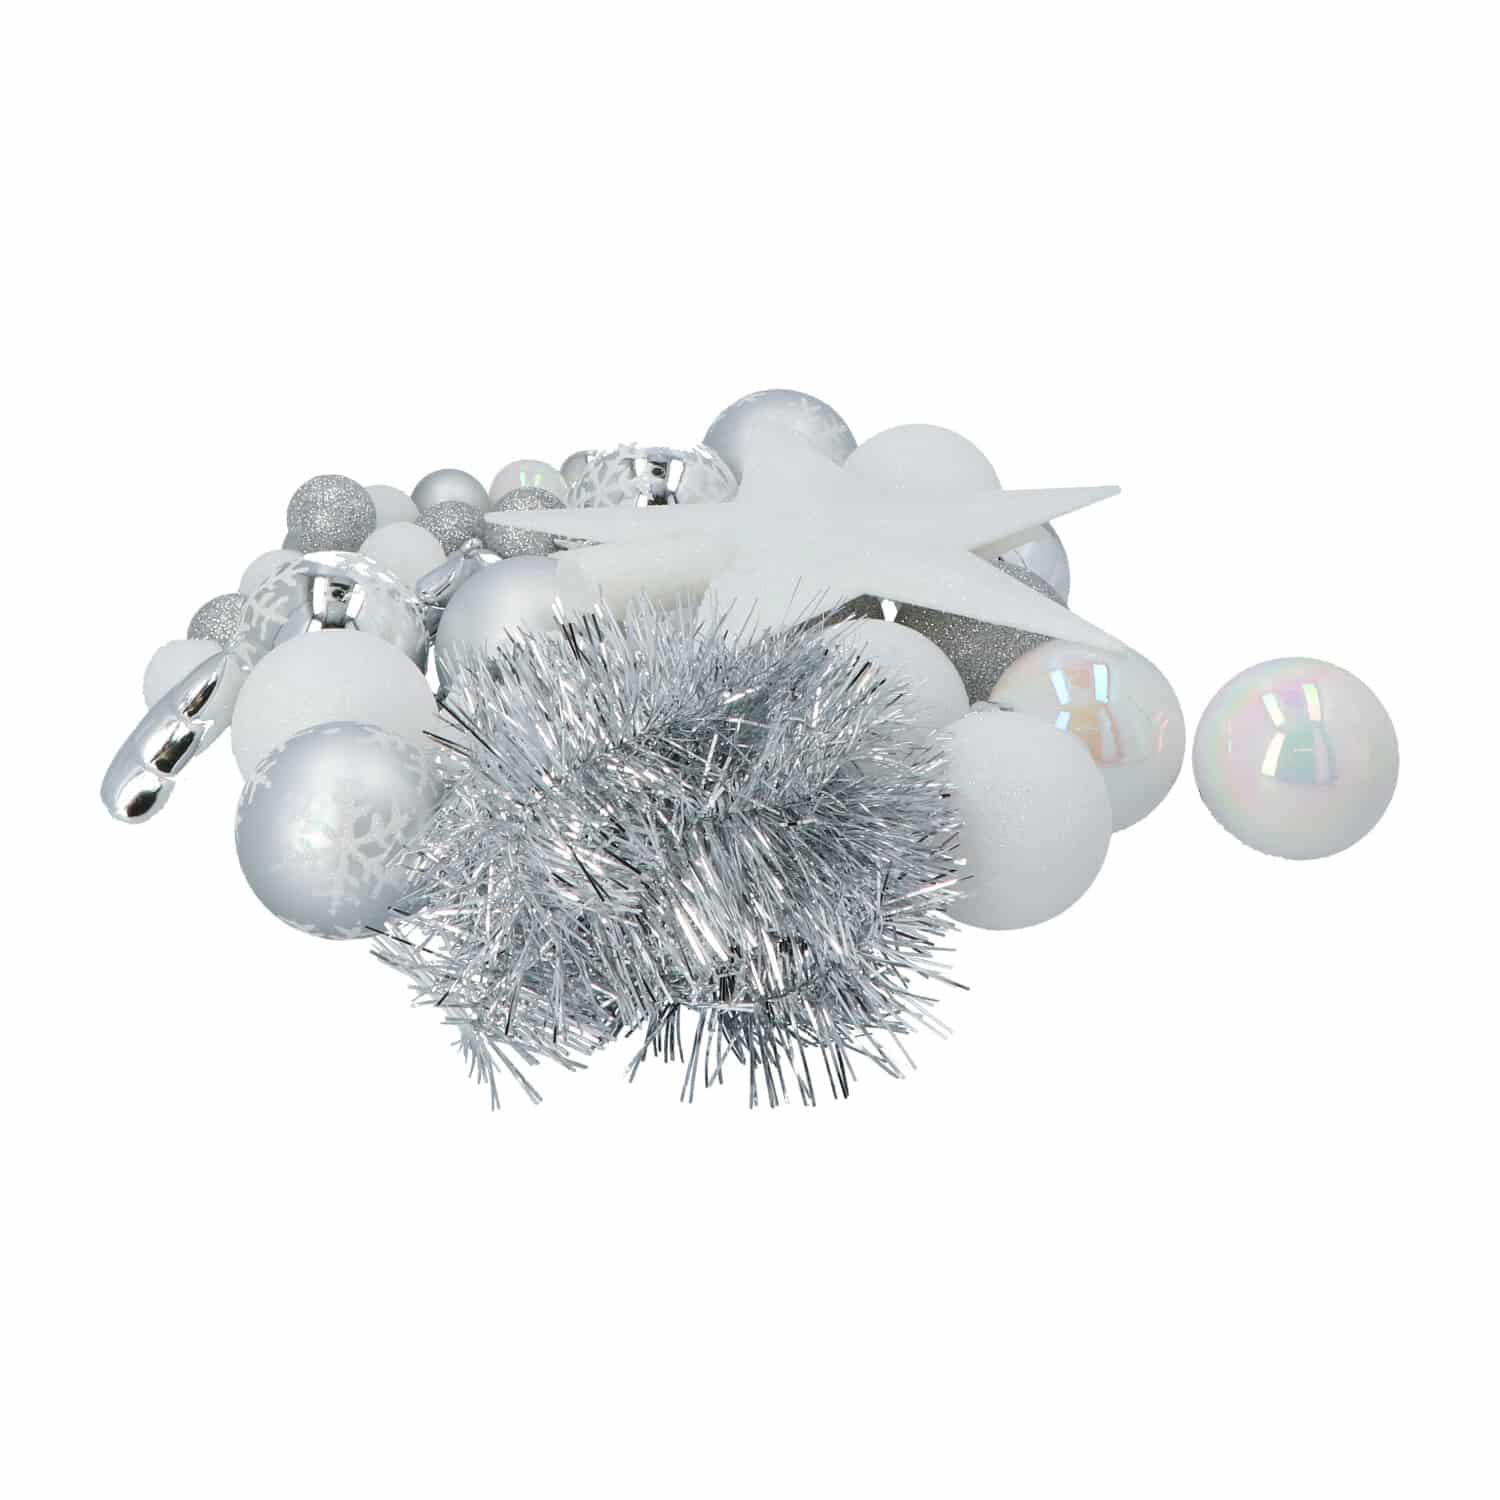 4goodz 44-delige Decoratieve Kerstballenset Wit - binnen en buiten